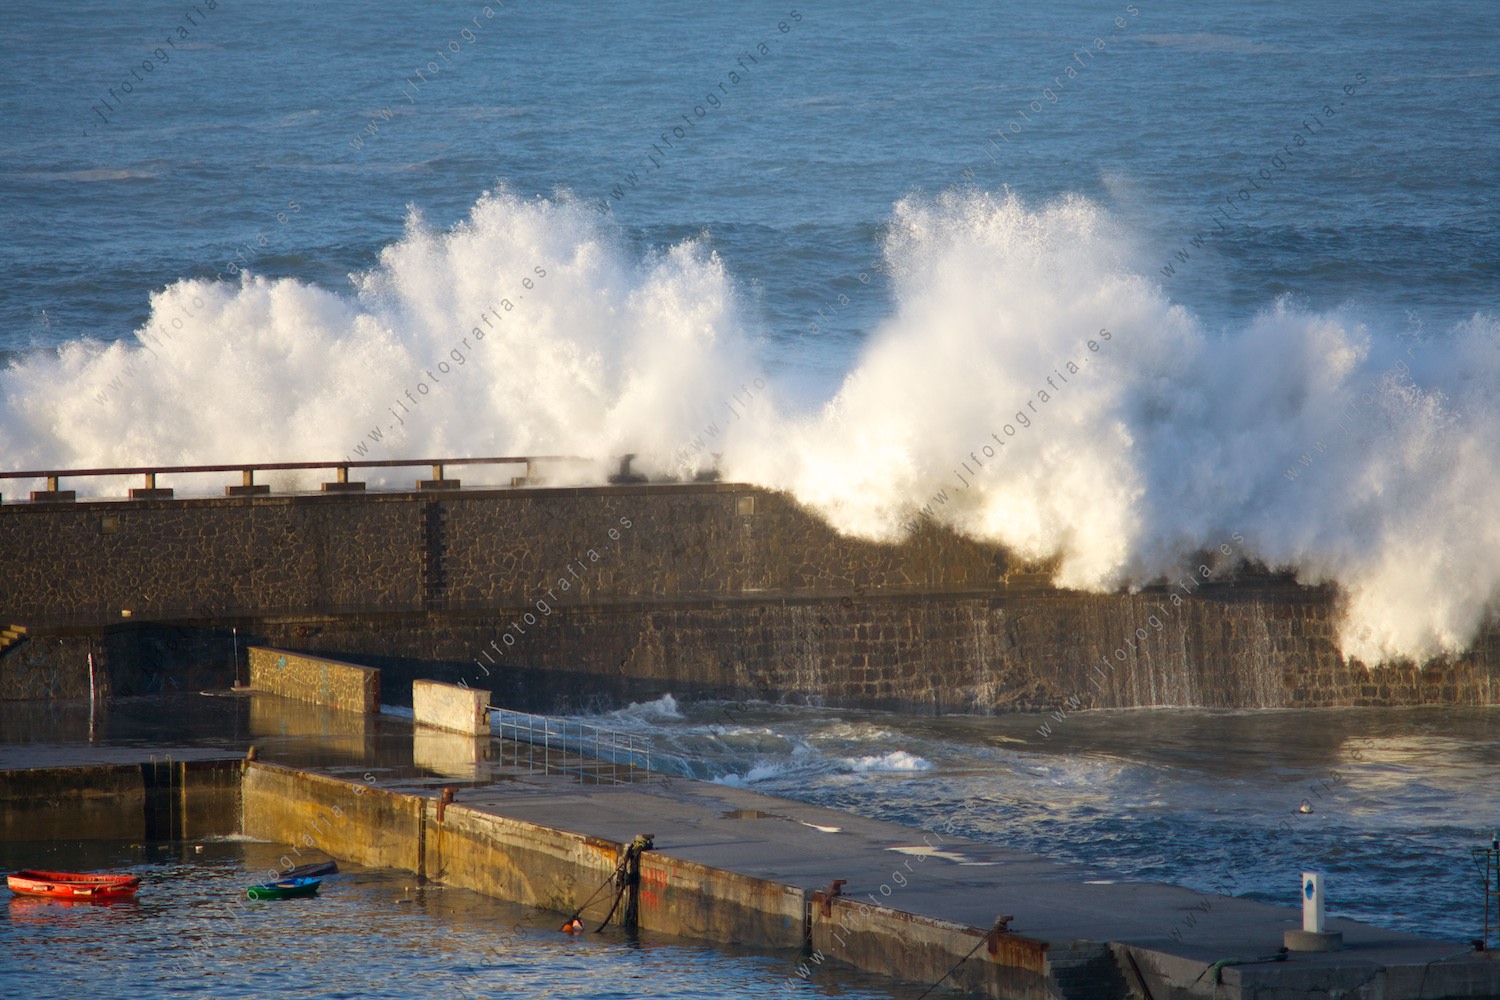 Las olas gigantes del temporal de febrero, rompen contra uno de los diques del puerto de Bermeo, levantando metros de columnas de agua. 